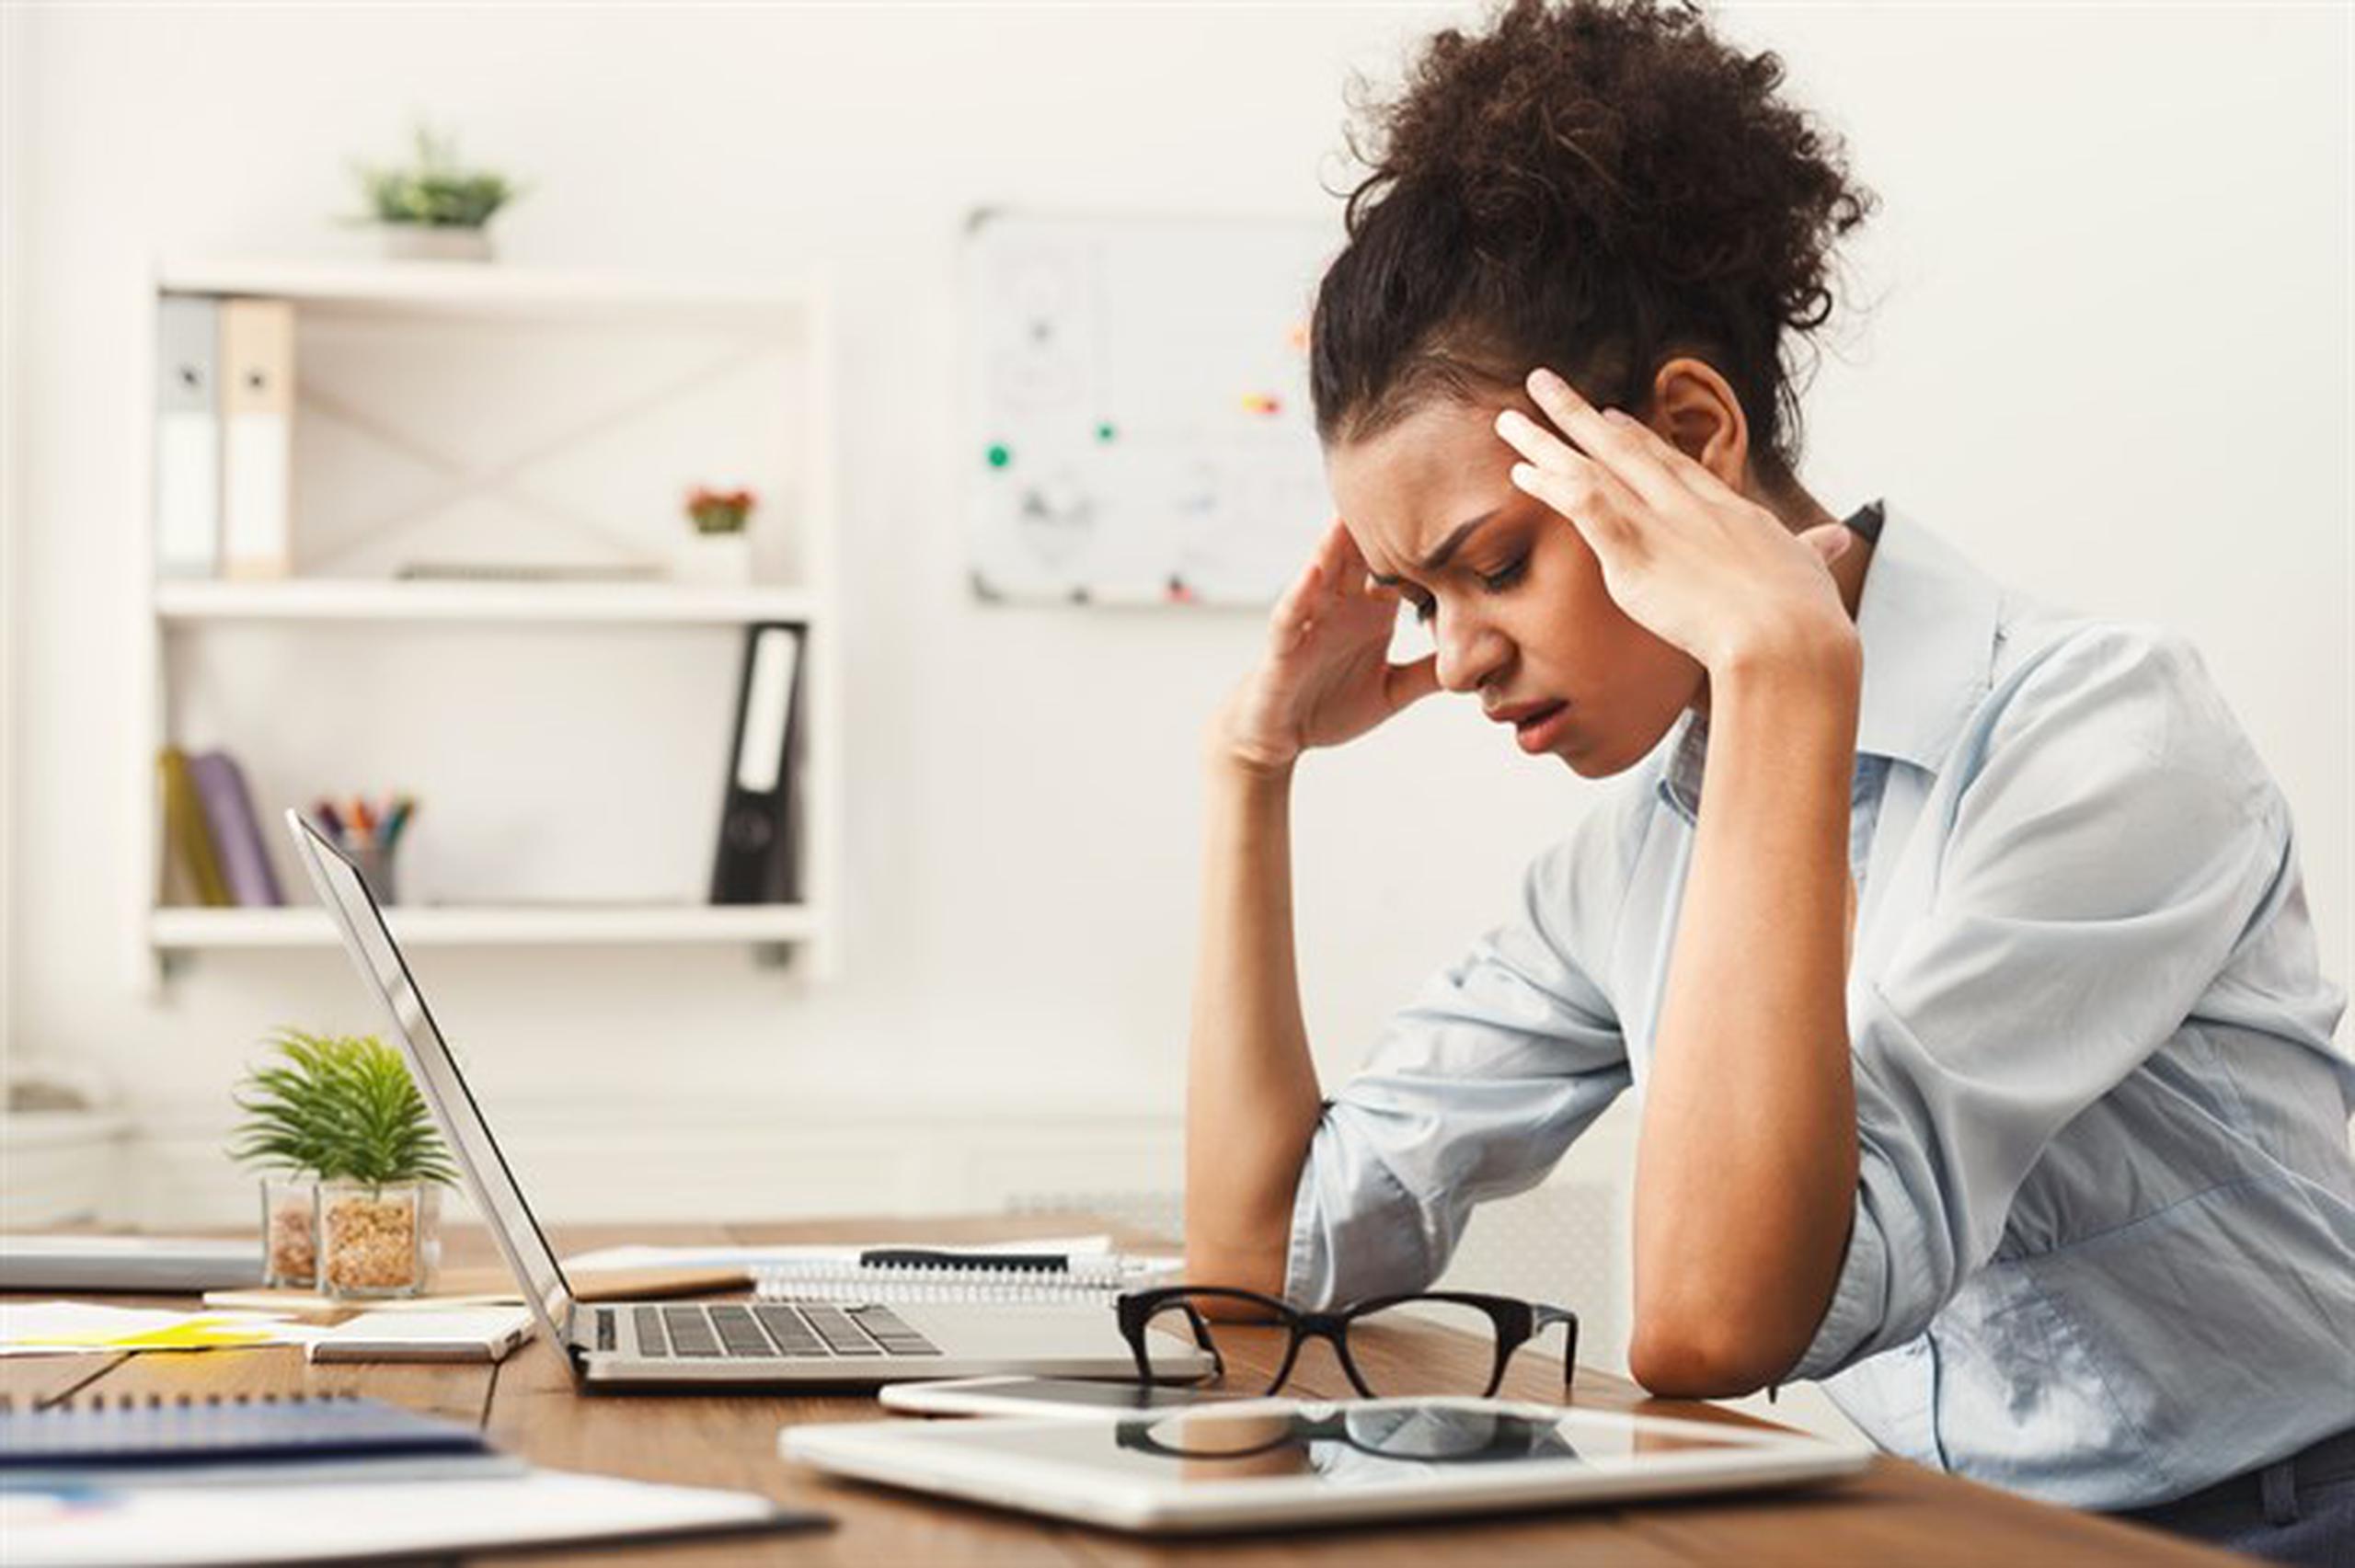 Para evaluar el índice de experiencia negativa, Gallup preguntó a las personas si habían experimentado sentimientos como dolor físico, preocupación, tristeza, estrés o ira. (Shutterstock)